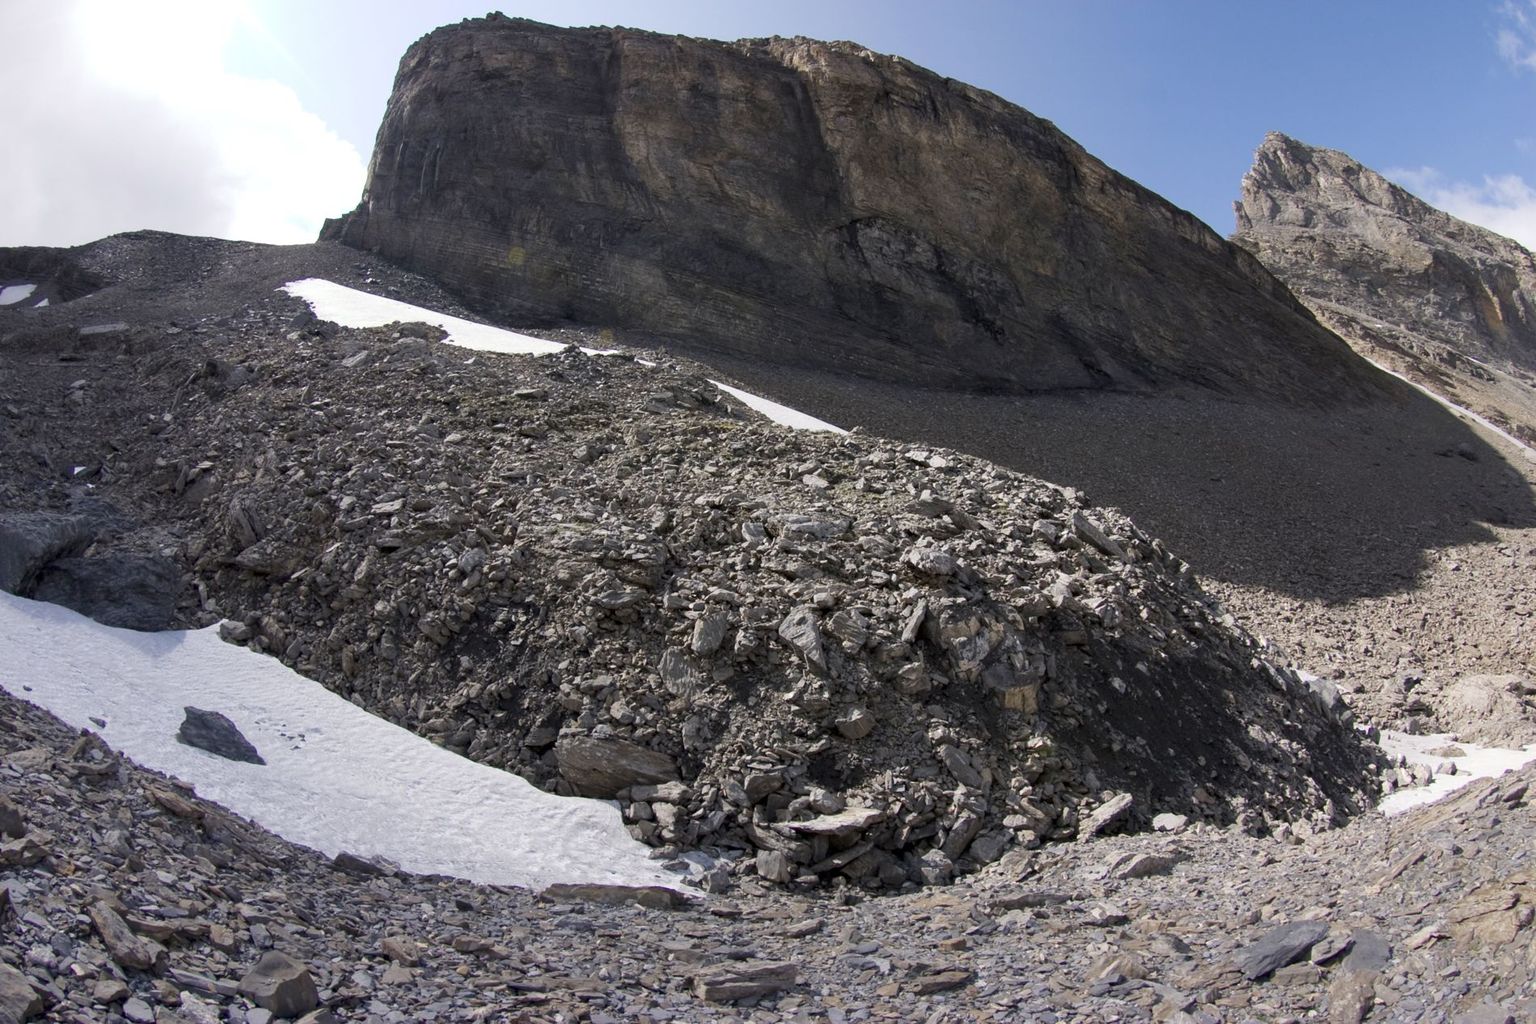 Ein kleiner aktiver Blockgletscher im Forschungsgebiet "Gemmi/Furggentälti", typisch sind die steile Front und grossen Gesteinsblöcke